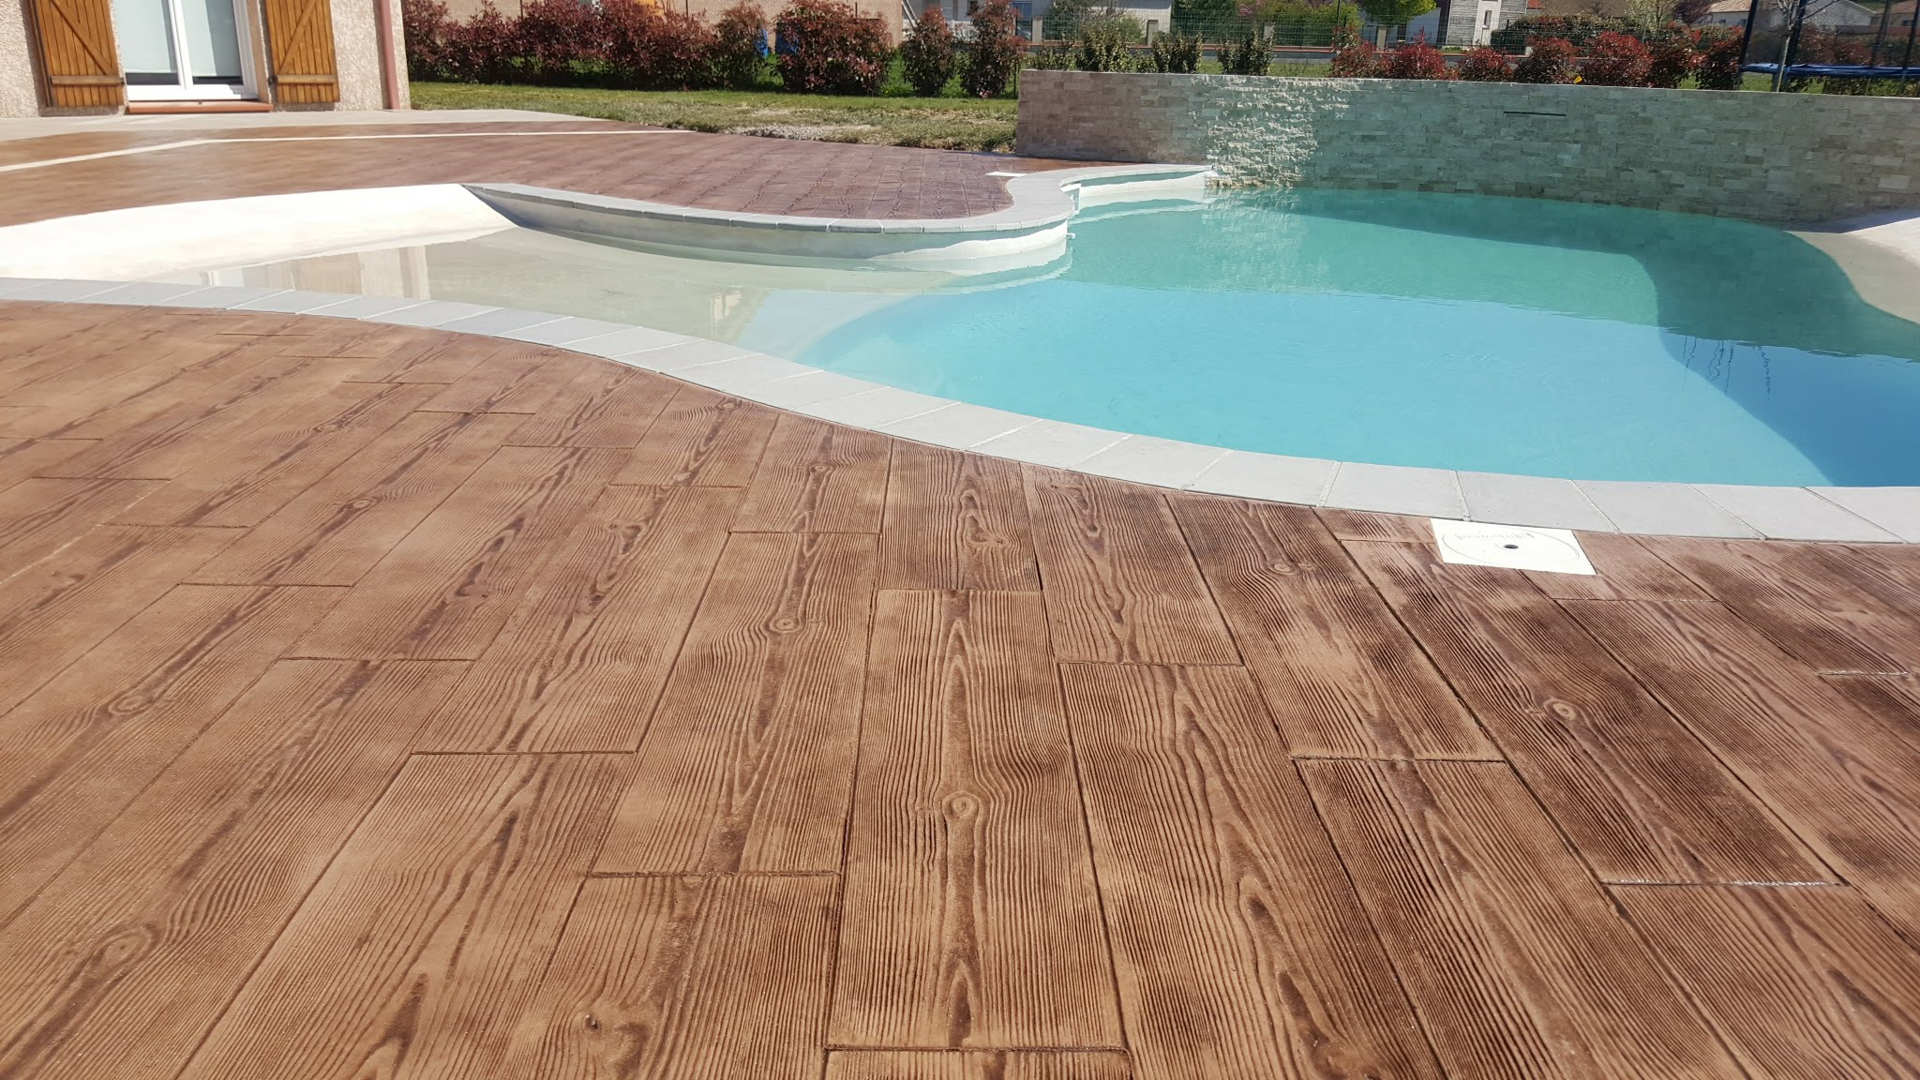 模仿木頭的壓印混凝土圍繞著游泳池